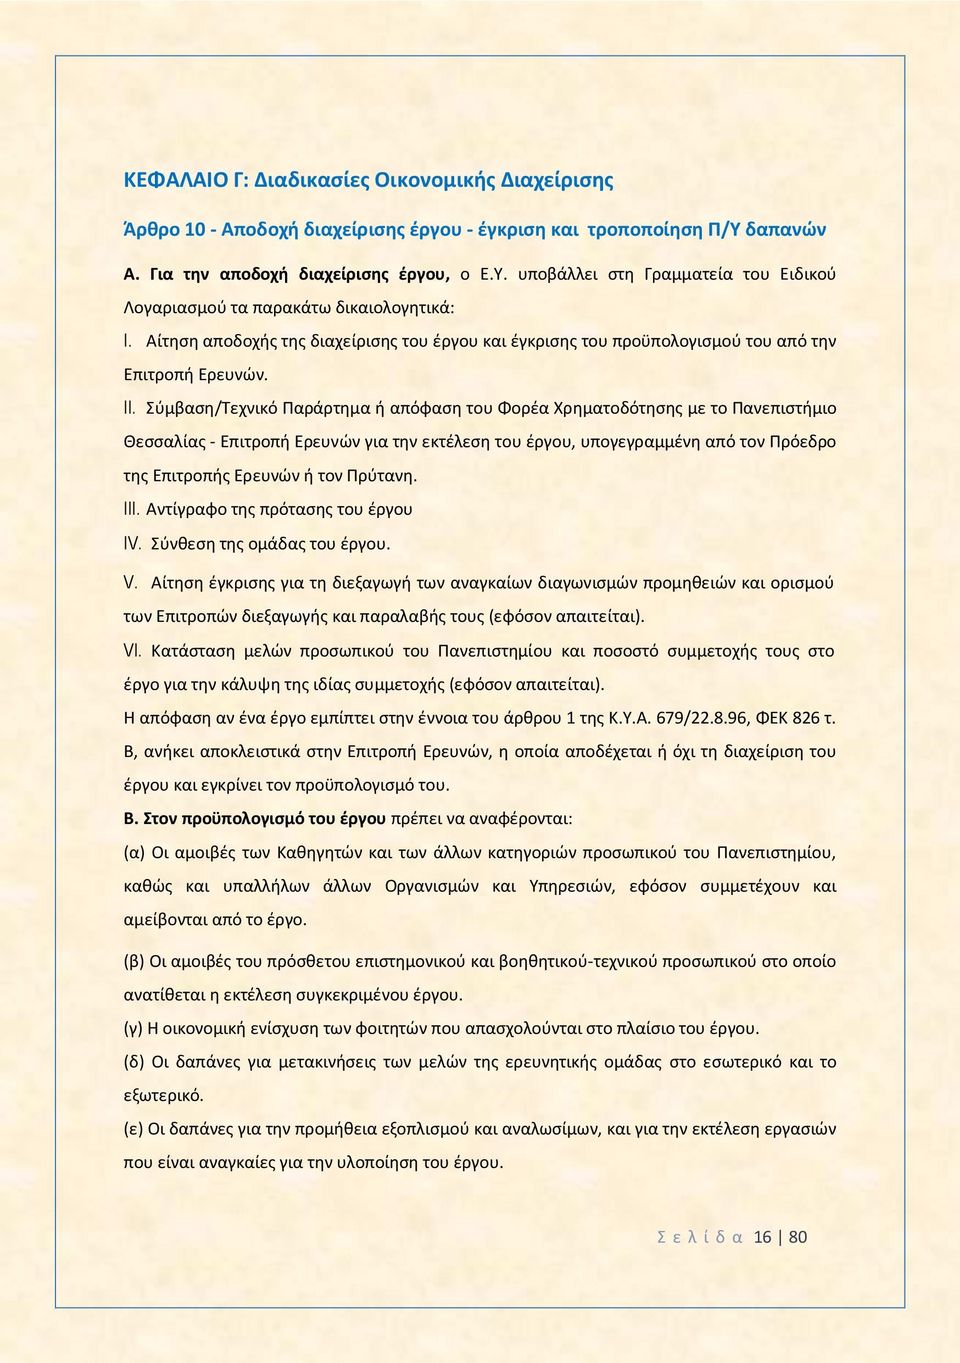 Σύμβαση/Τεχνικό Παράρτημα ή απόφαση του Φορέα Χρηματοδότησης με το Πανεπιστήμιο Θεσσαλίας - Επιτροπή Ερευνών για την εκτέλεση του έργου, υπογεγραμμένη από τον Πρόεδρο της Επιτροπής Ερευνών ή τον